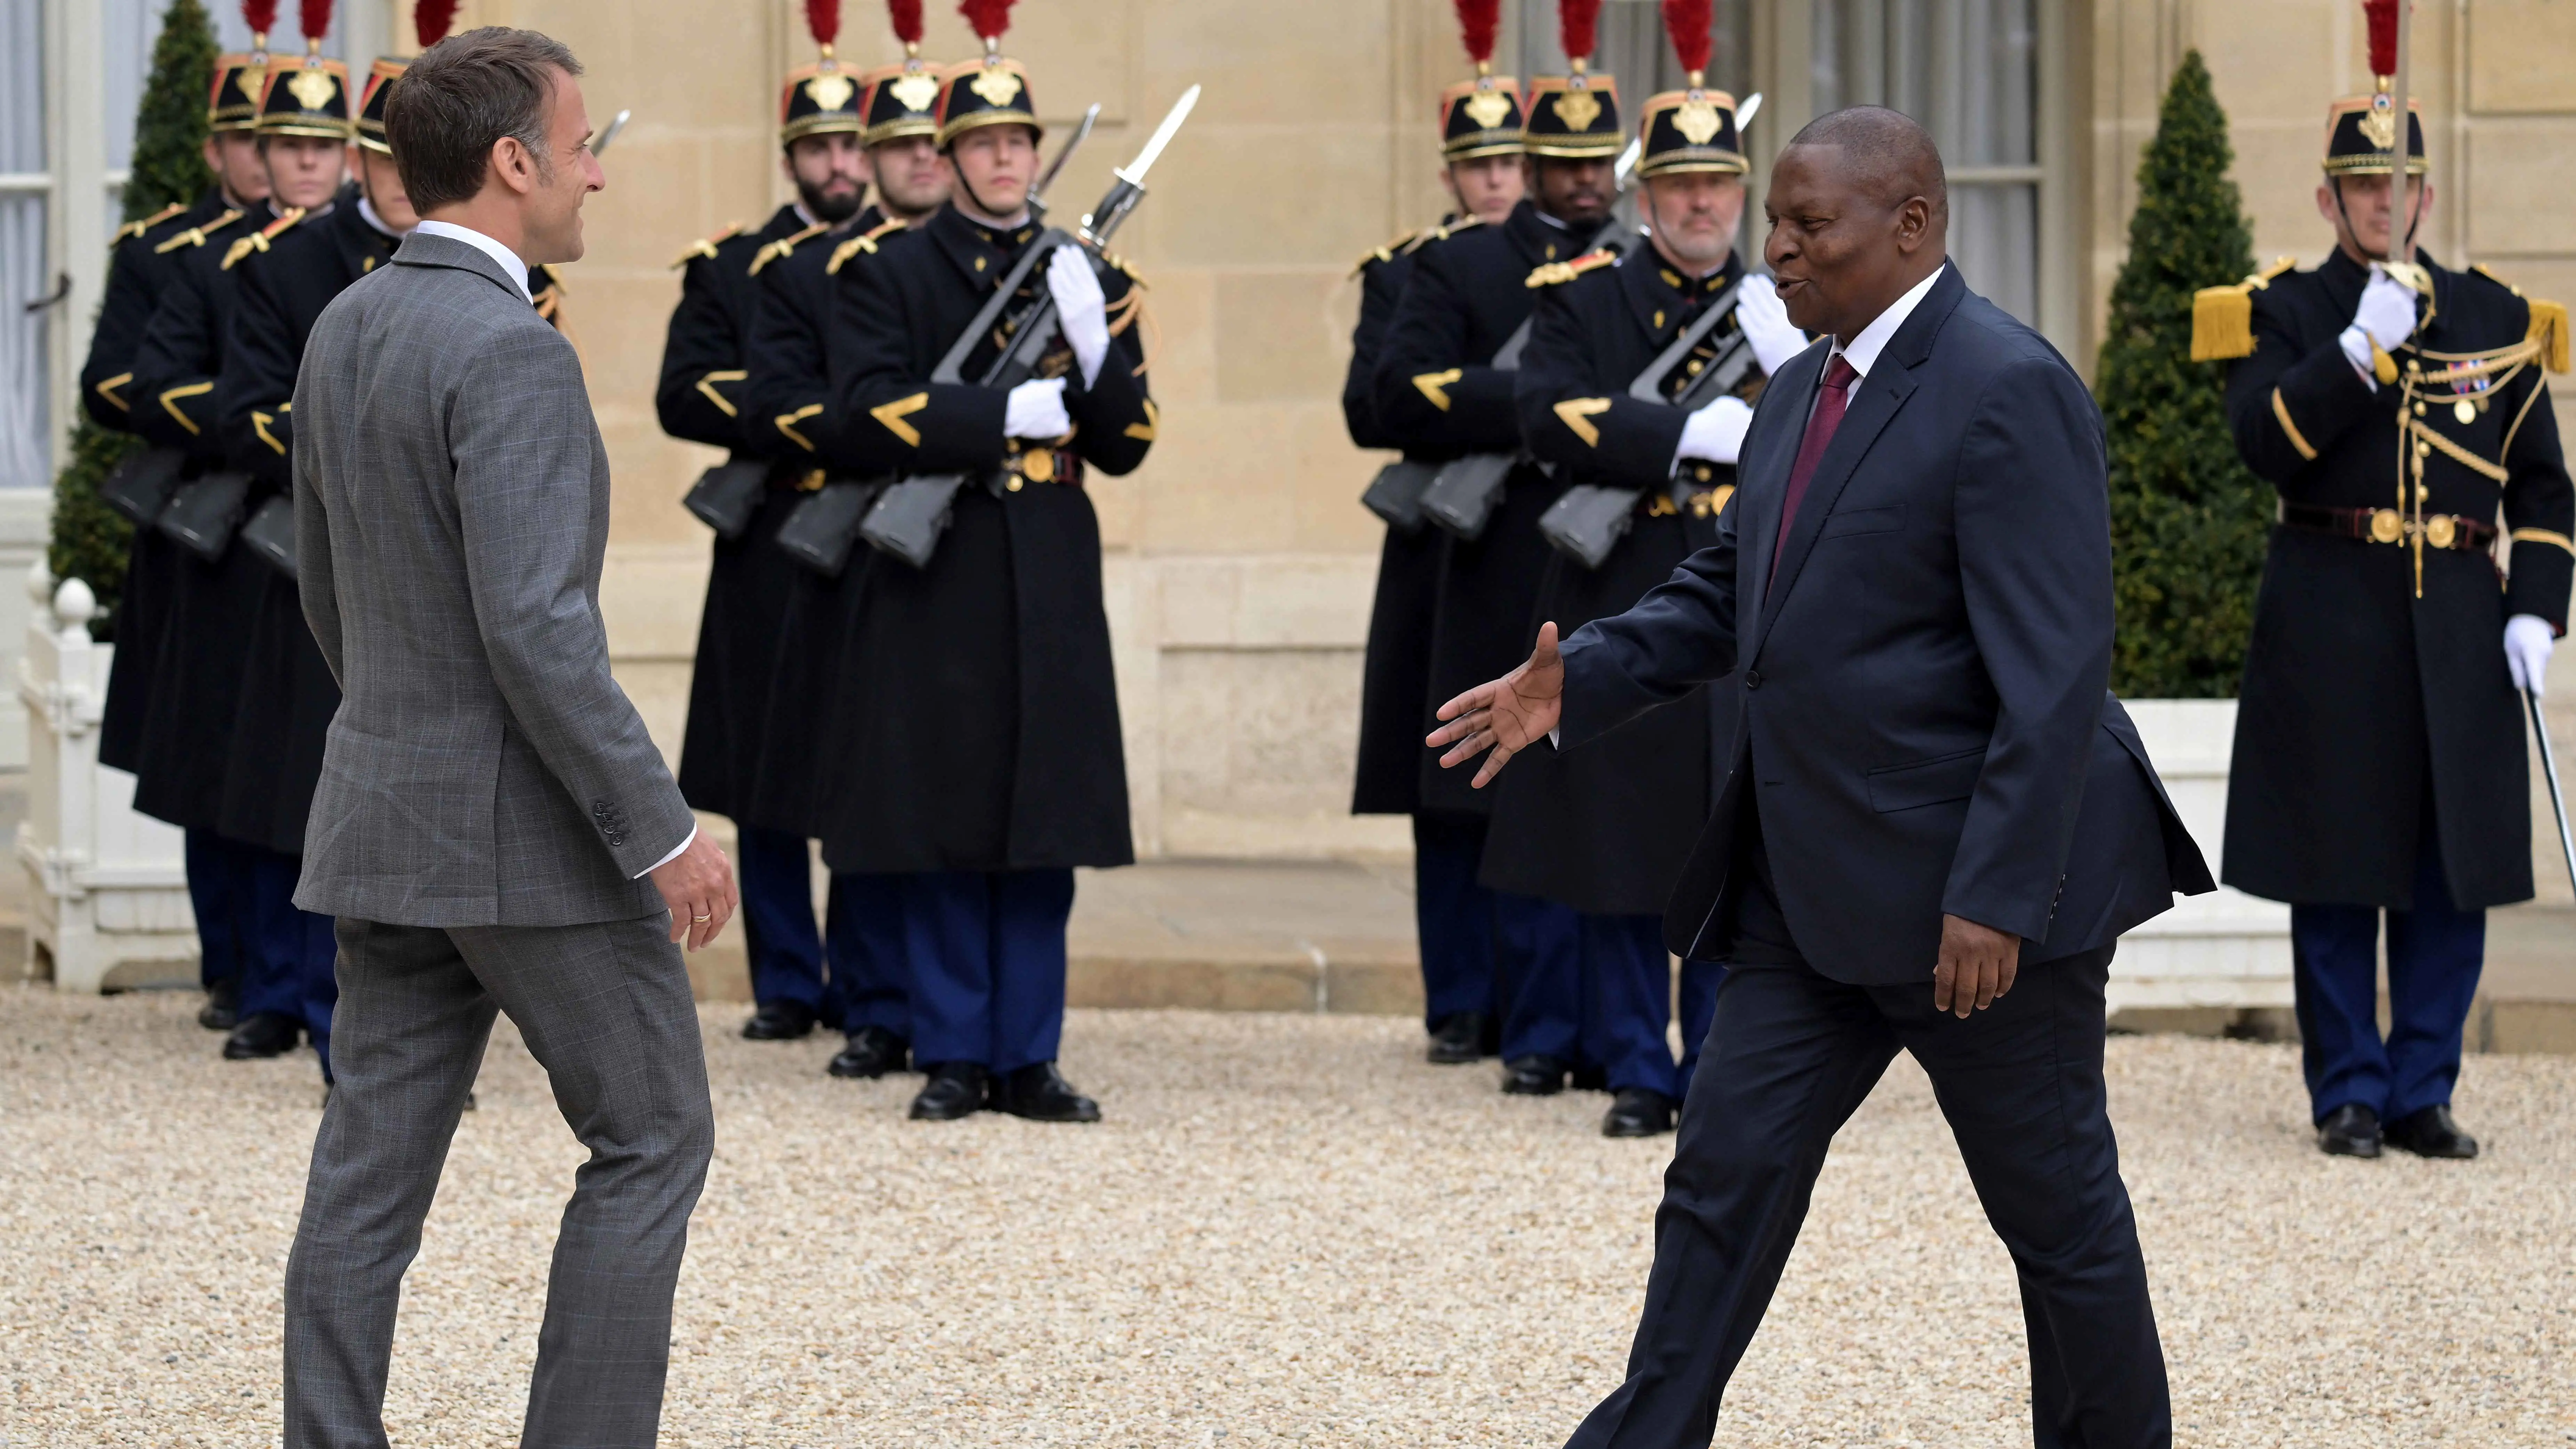 لمواجهة المد الروسي.. الغرب يسعى لإعادة صياغة علاقته مع أفريقيا الوسطى